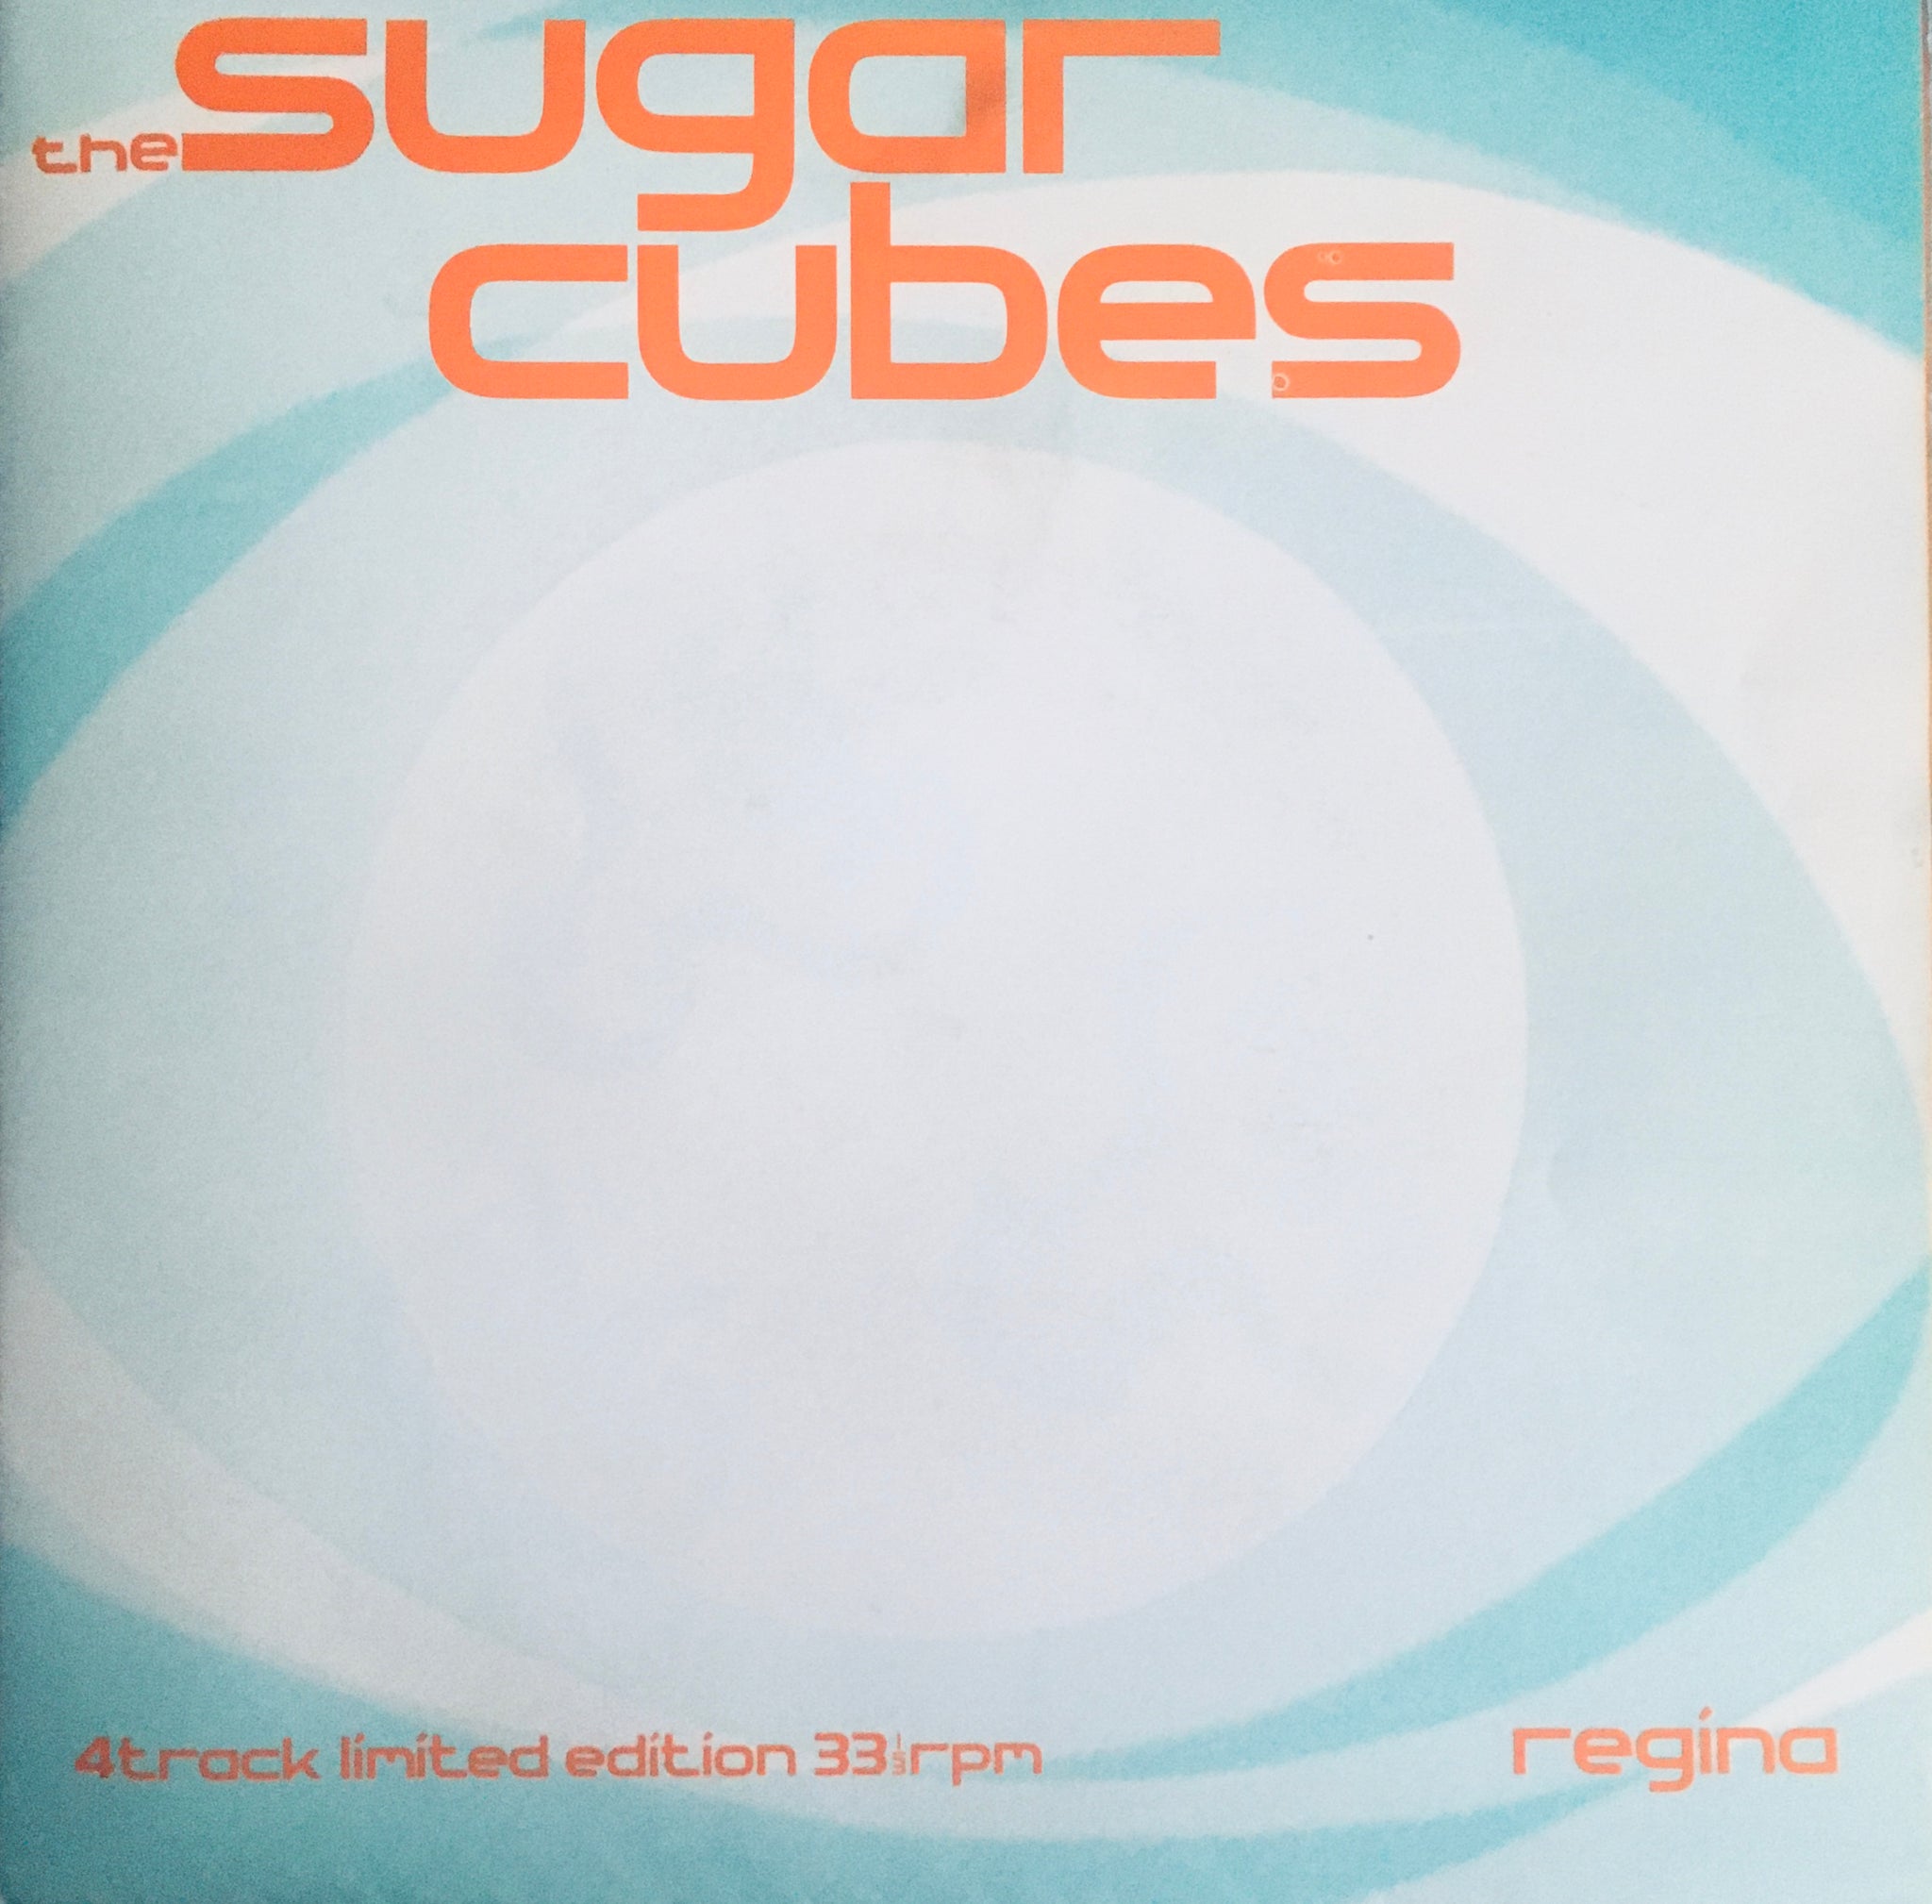 The Sugarcubes "Regina" Single (1989)